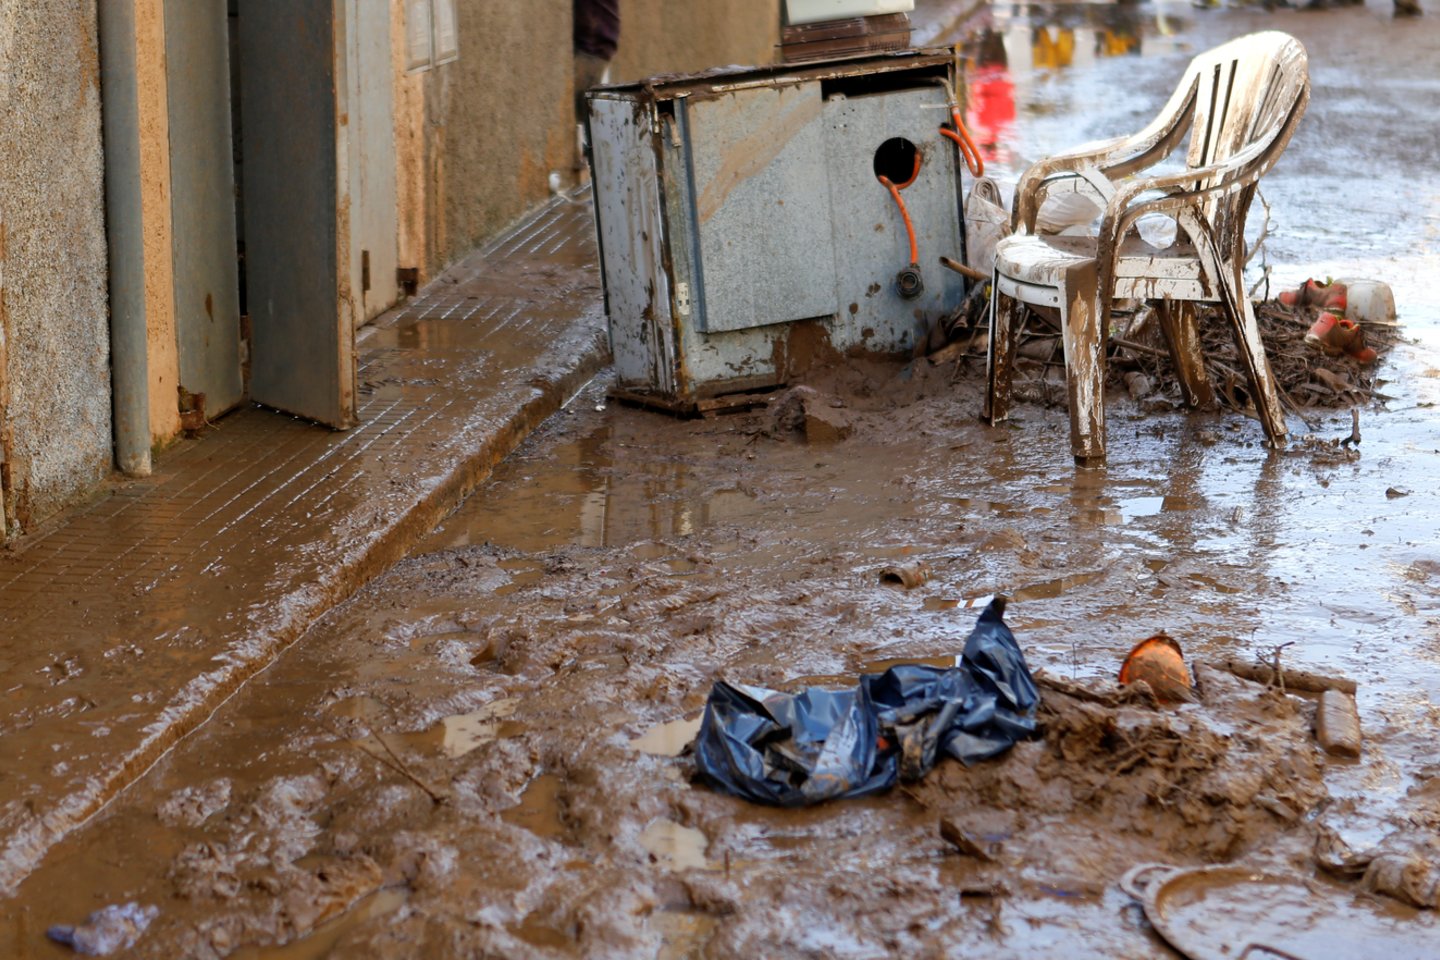  Ispanų gelbėtojams radus per potvynius Maljorkoje dingusio penkerių metų vaiko kūną, šių staigių potvynių aukų skaičius padidėjo iki 13.<br> Reuters/Scanpix nuotr. 